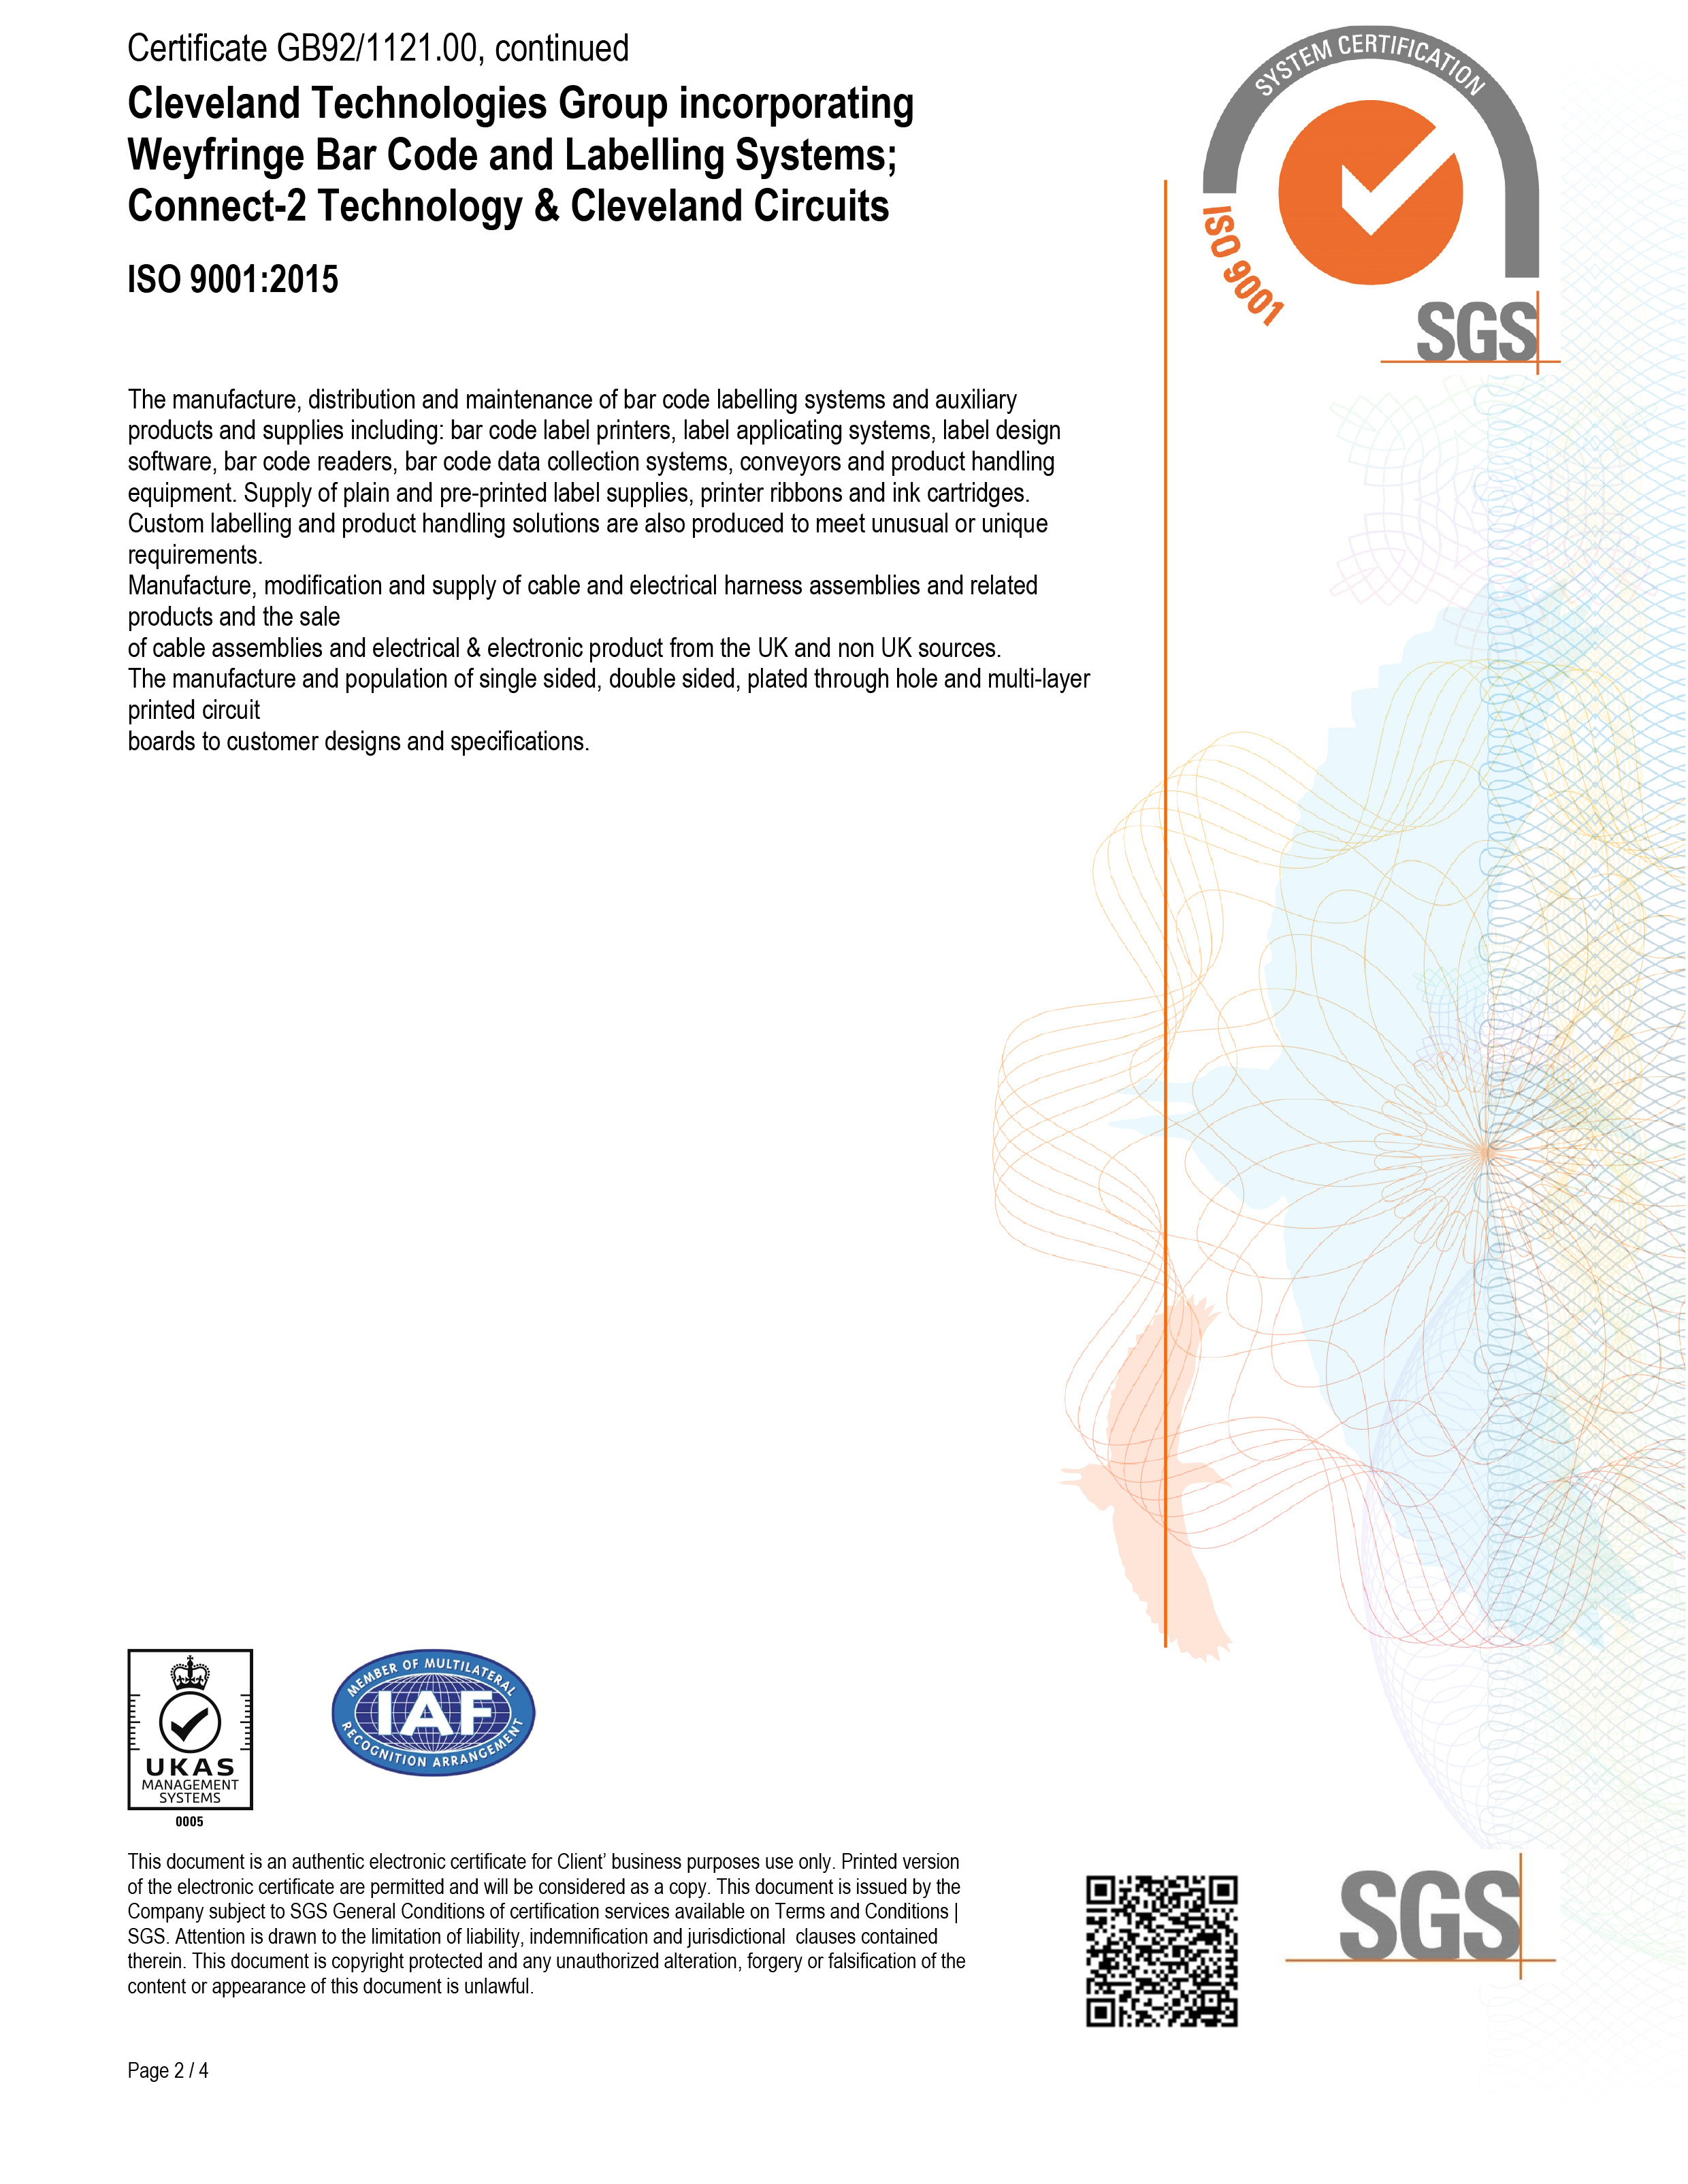 CTG Ltd ISO9001:2015 cert 2